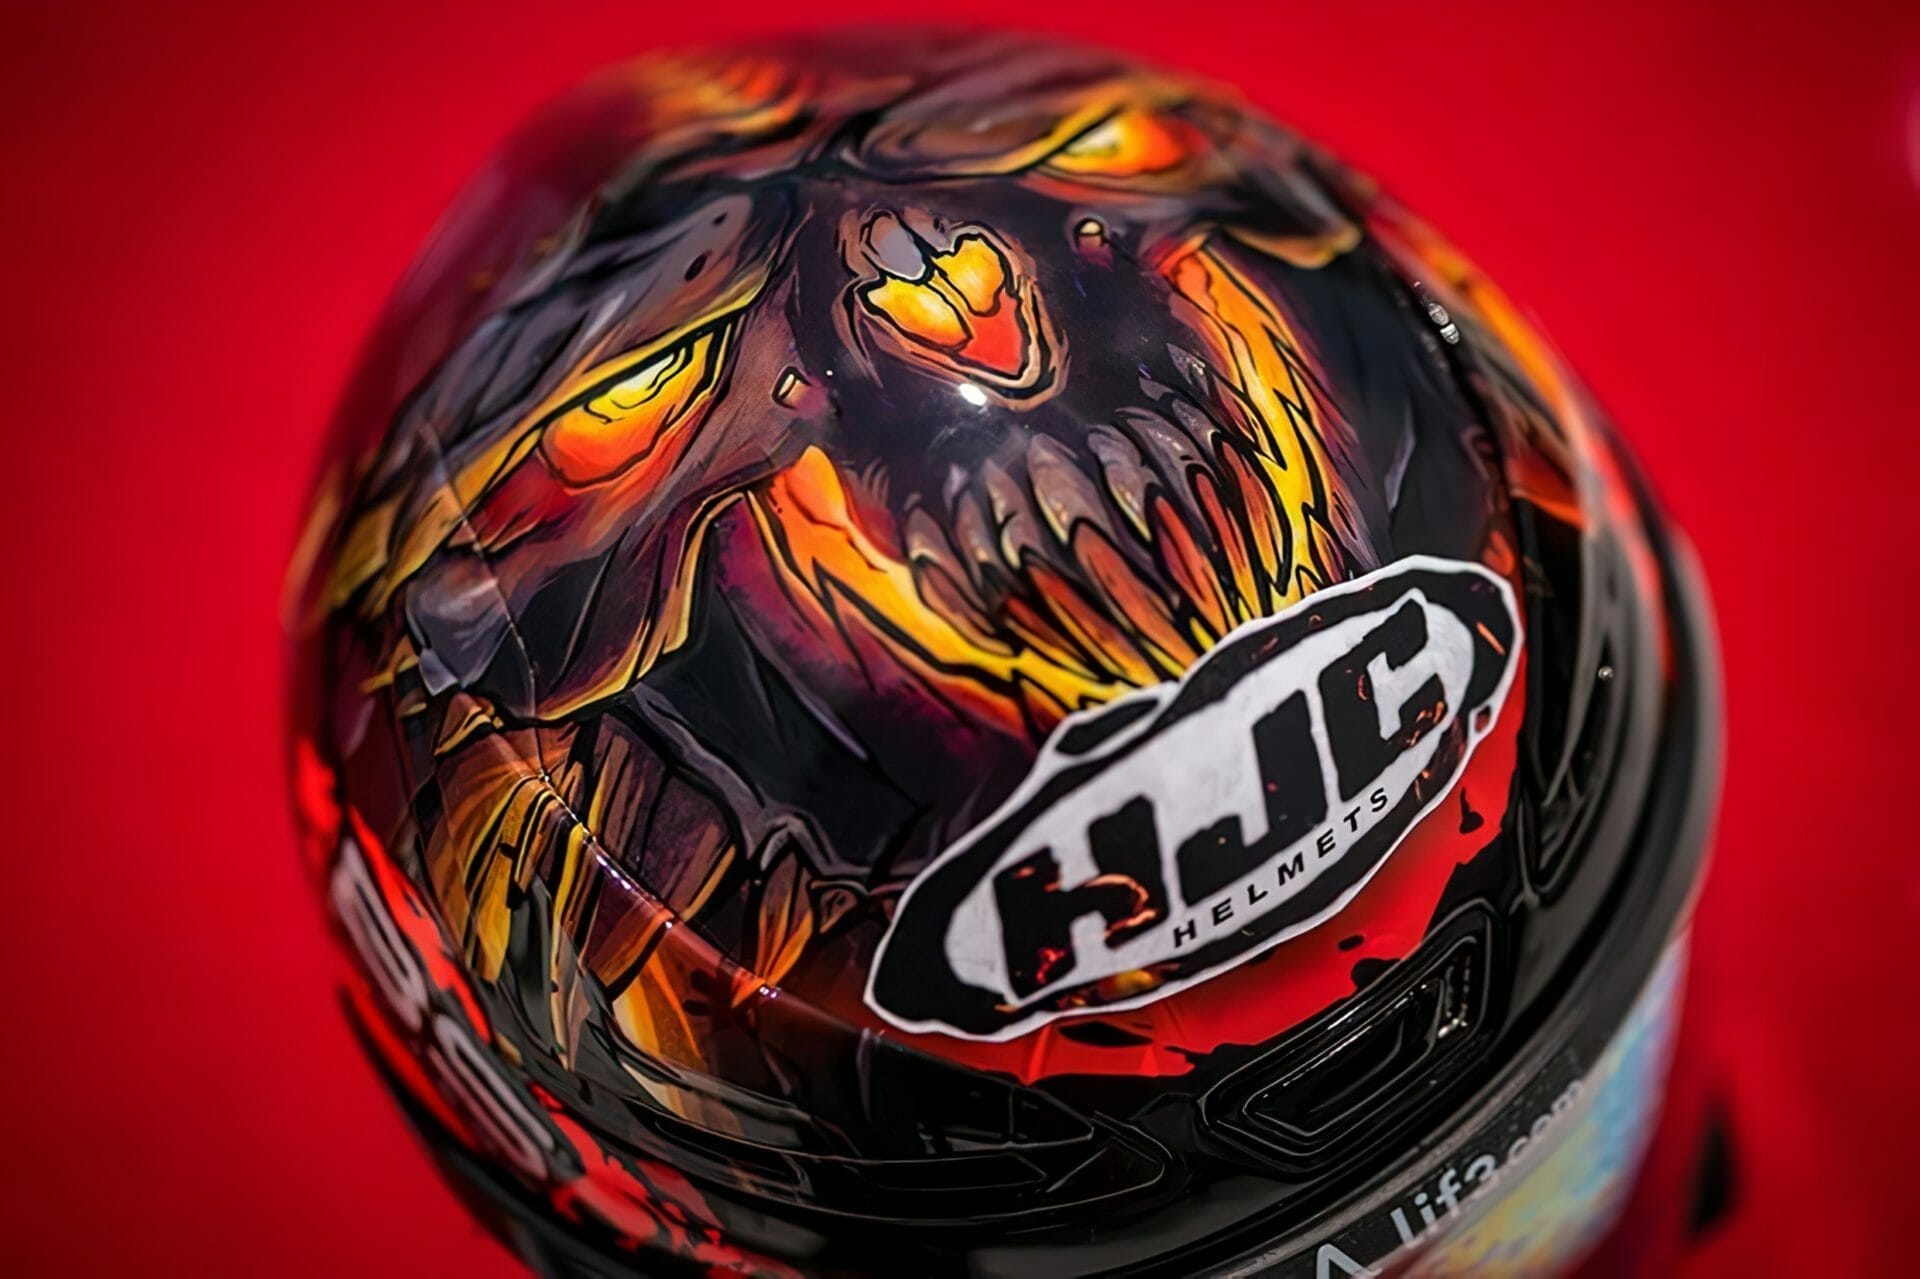 HJCs neuer Diablo Helm: Eine Mischung aus Stil und Sicherheit